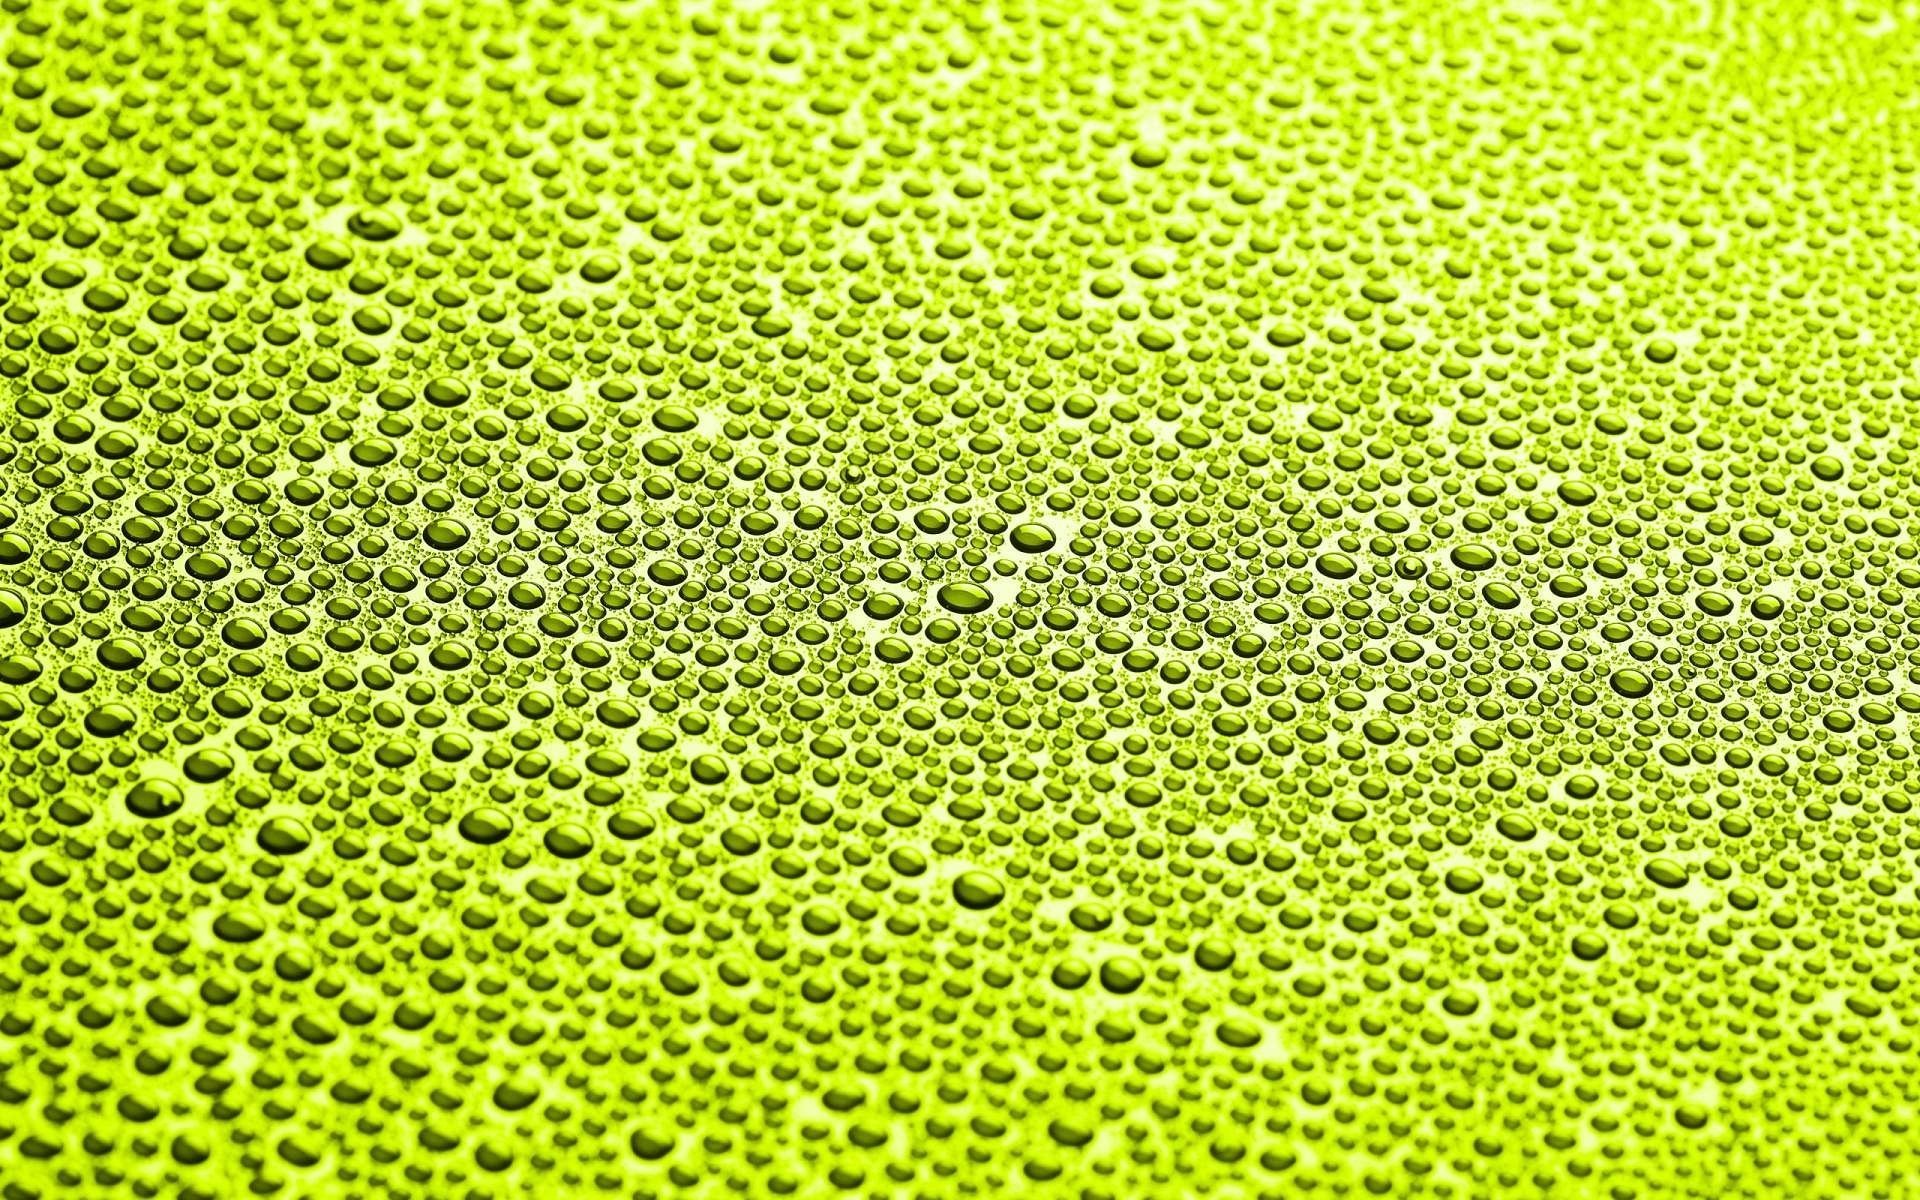 Макро съёмка капель воды на зелёном фоне